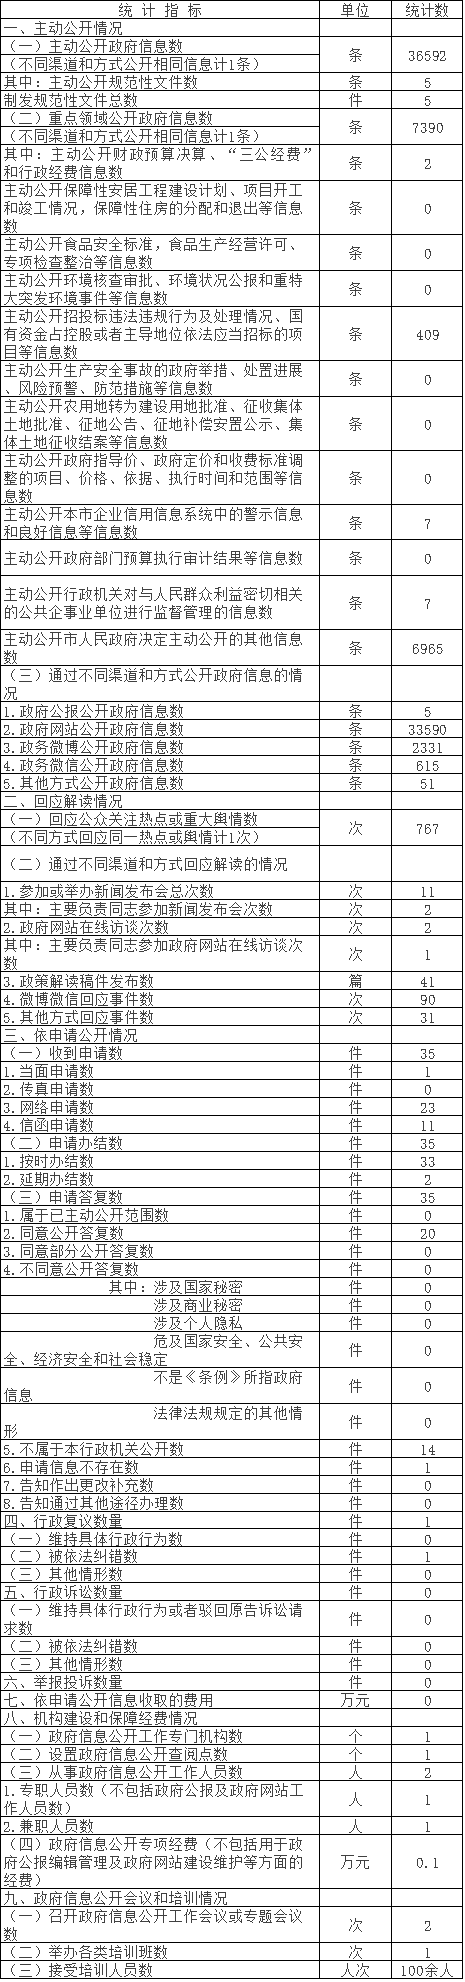 北京市水务局政府信息公开情况统计表(2017年度)